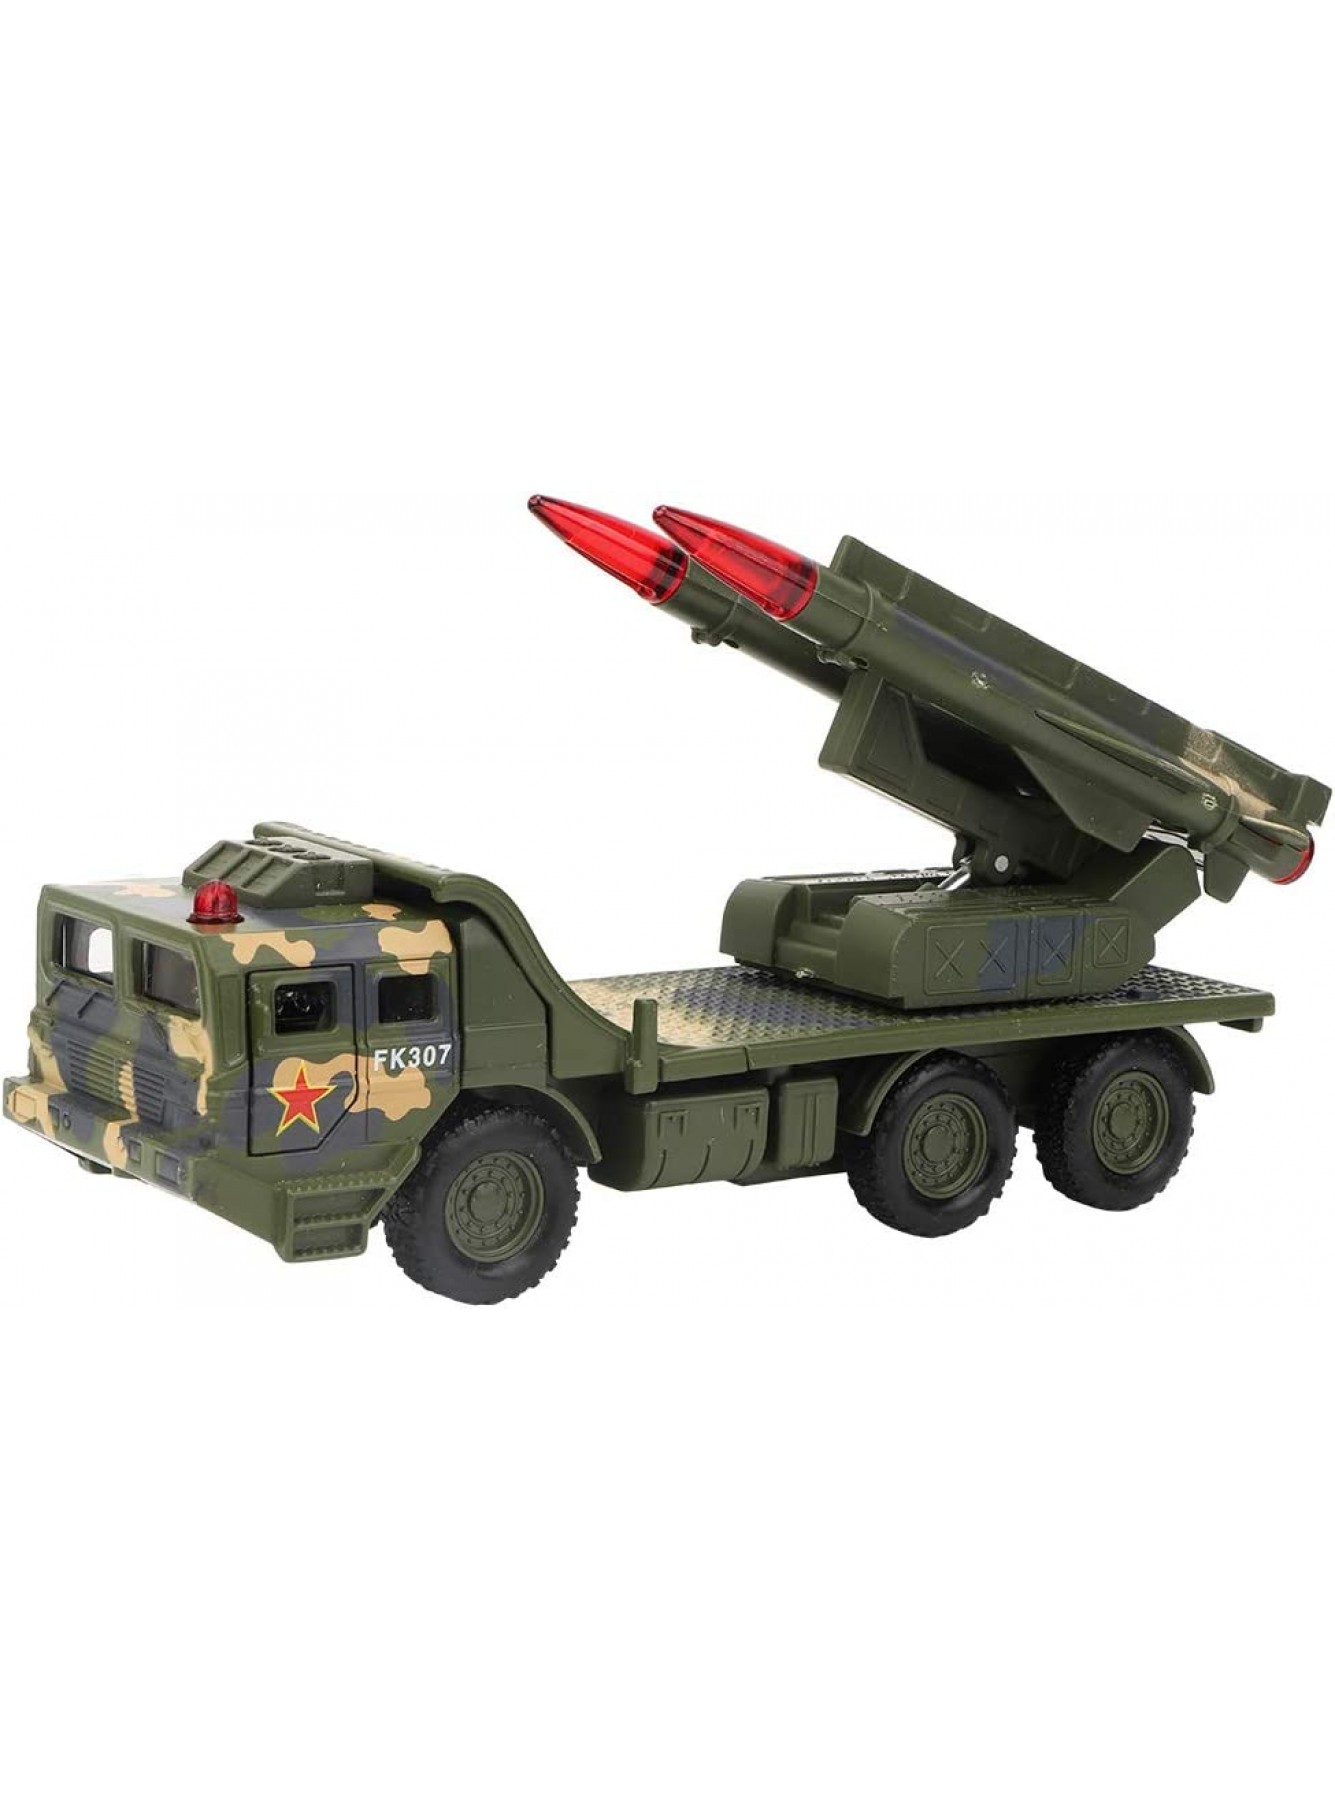 Maßstab 1:55 Raketenwerfer Realistischer Krieg Militärische Kampffahrzeuge Bewegliche Raketenabschussrampe für Indoor Outdoor SpielenGrün - B07V871WP2